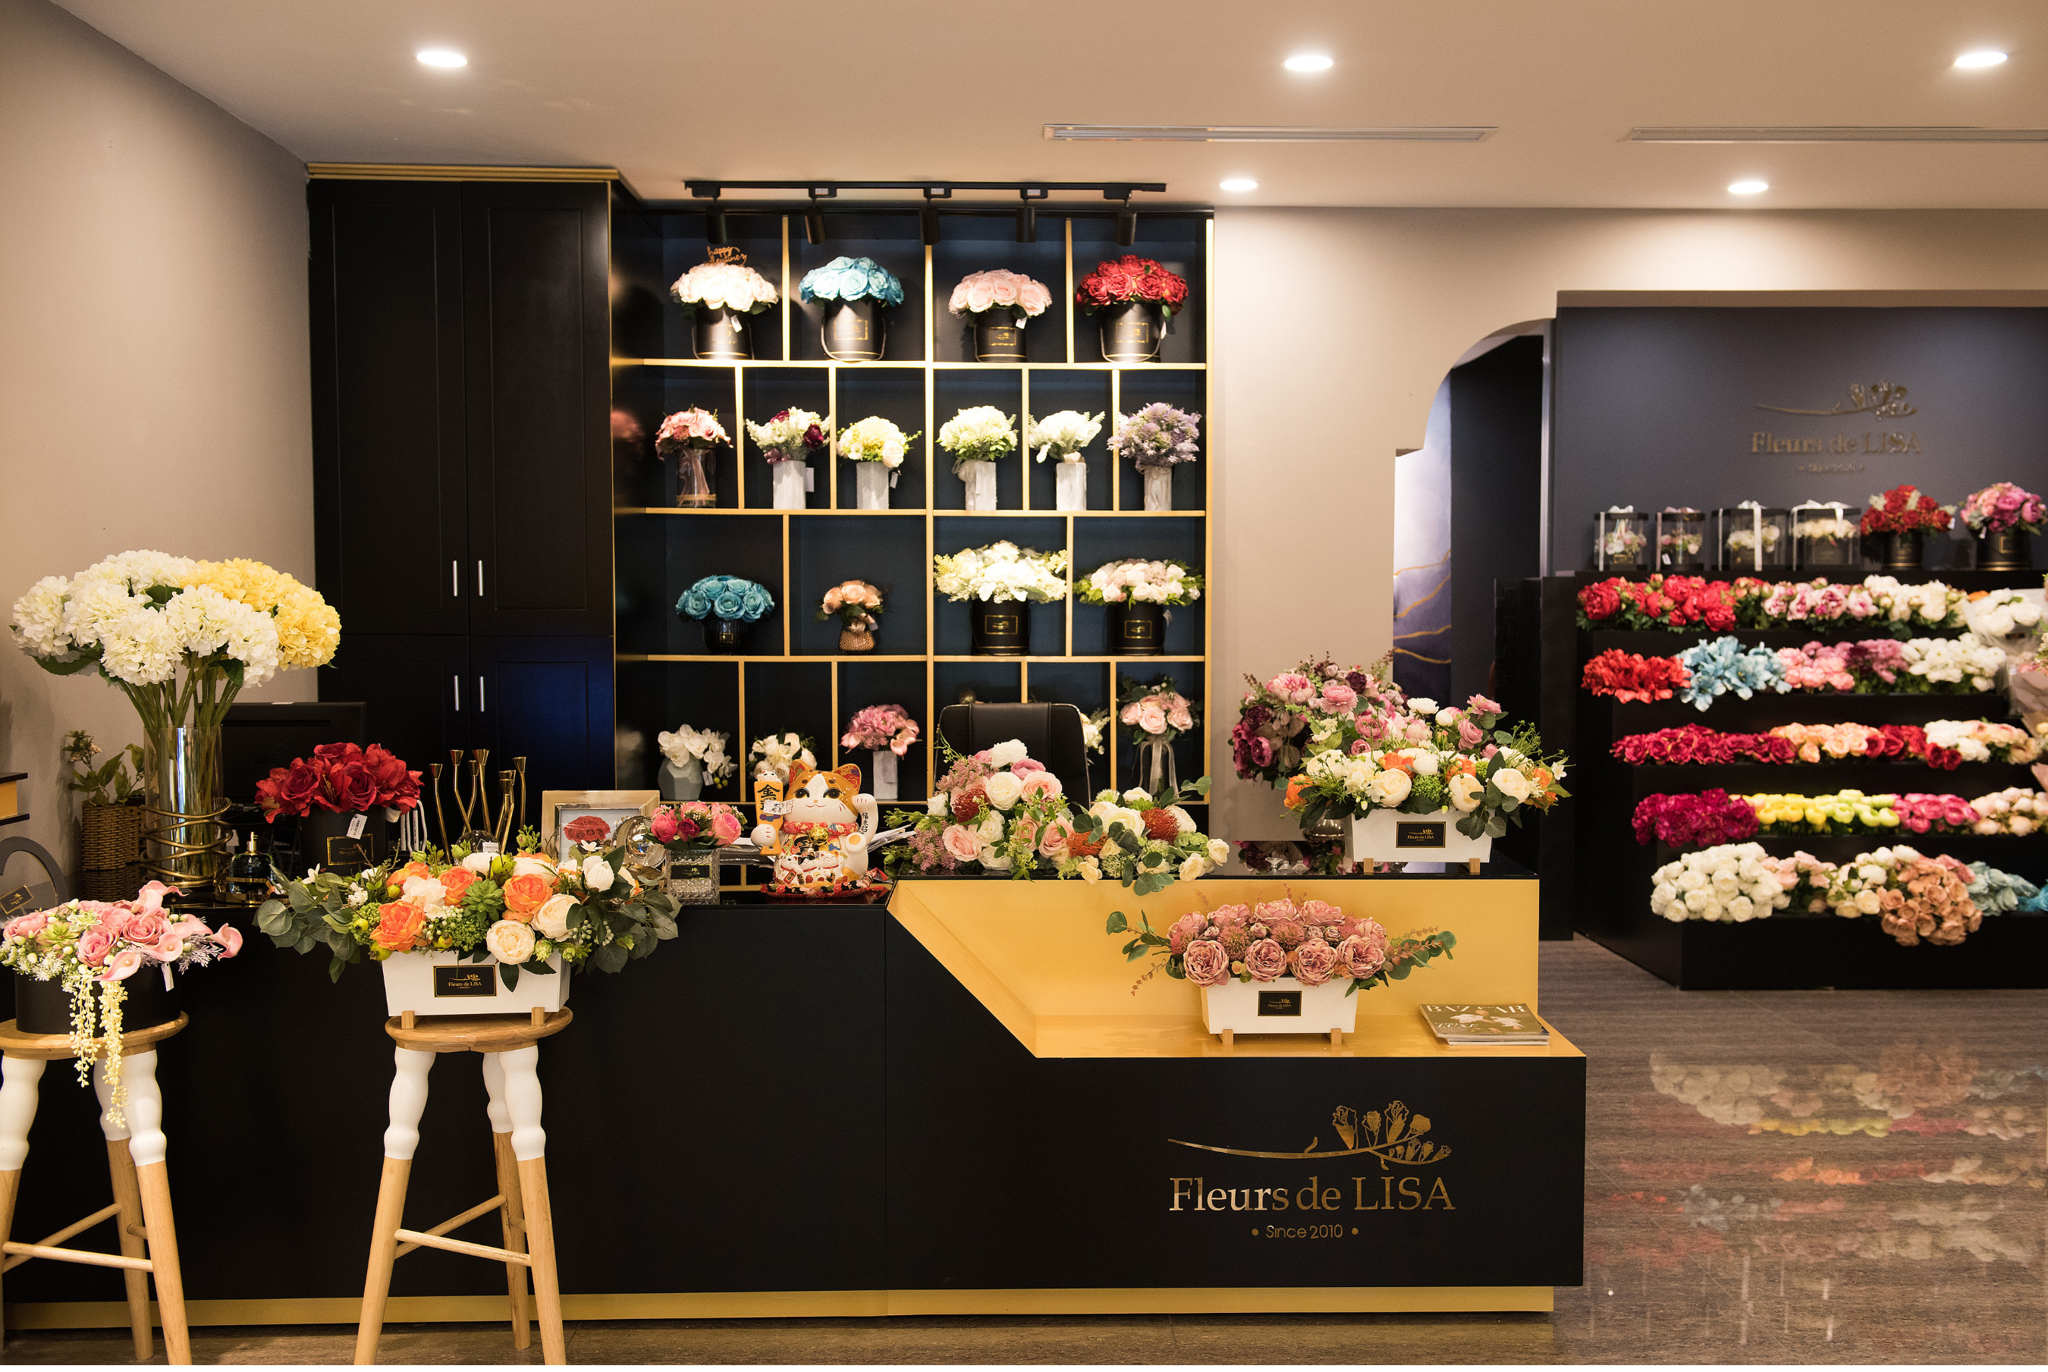 Phát triển bền vững khi kinh doanh nhượng quyền cửa hàng hoa